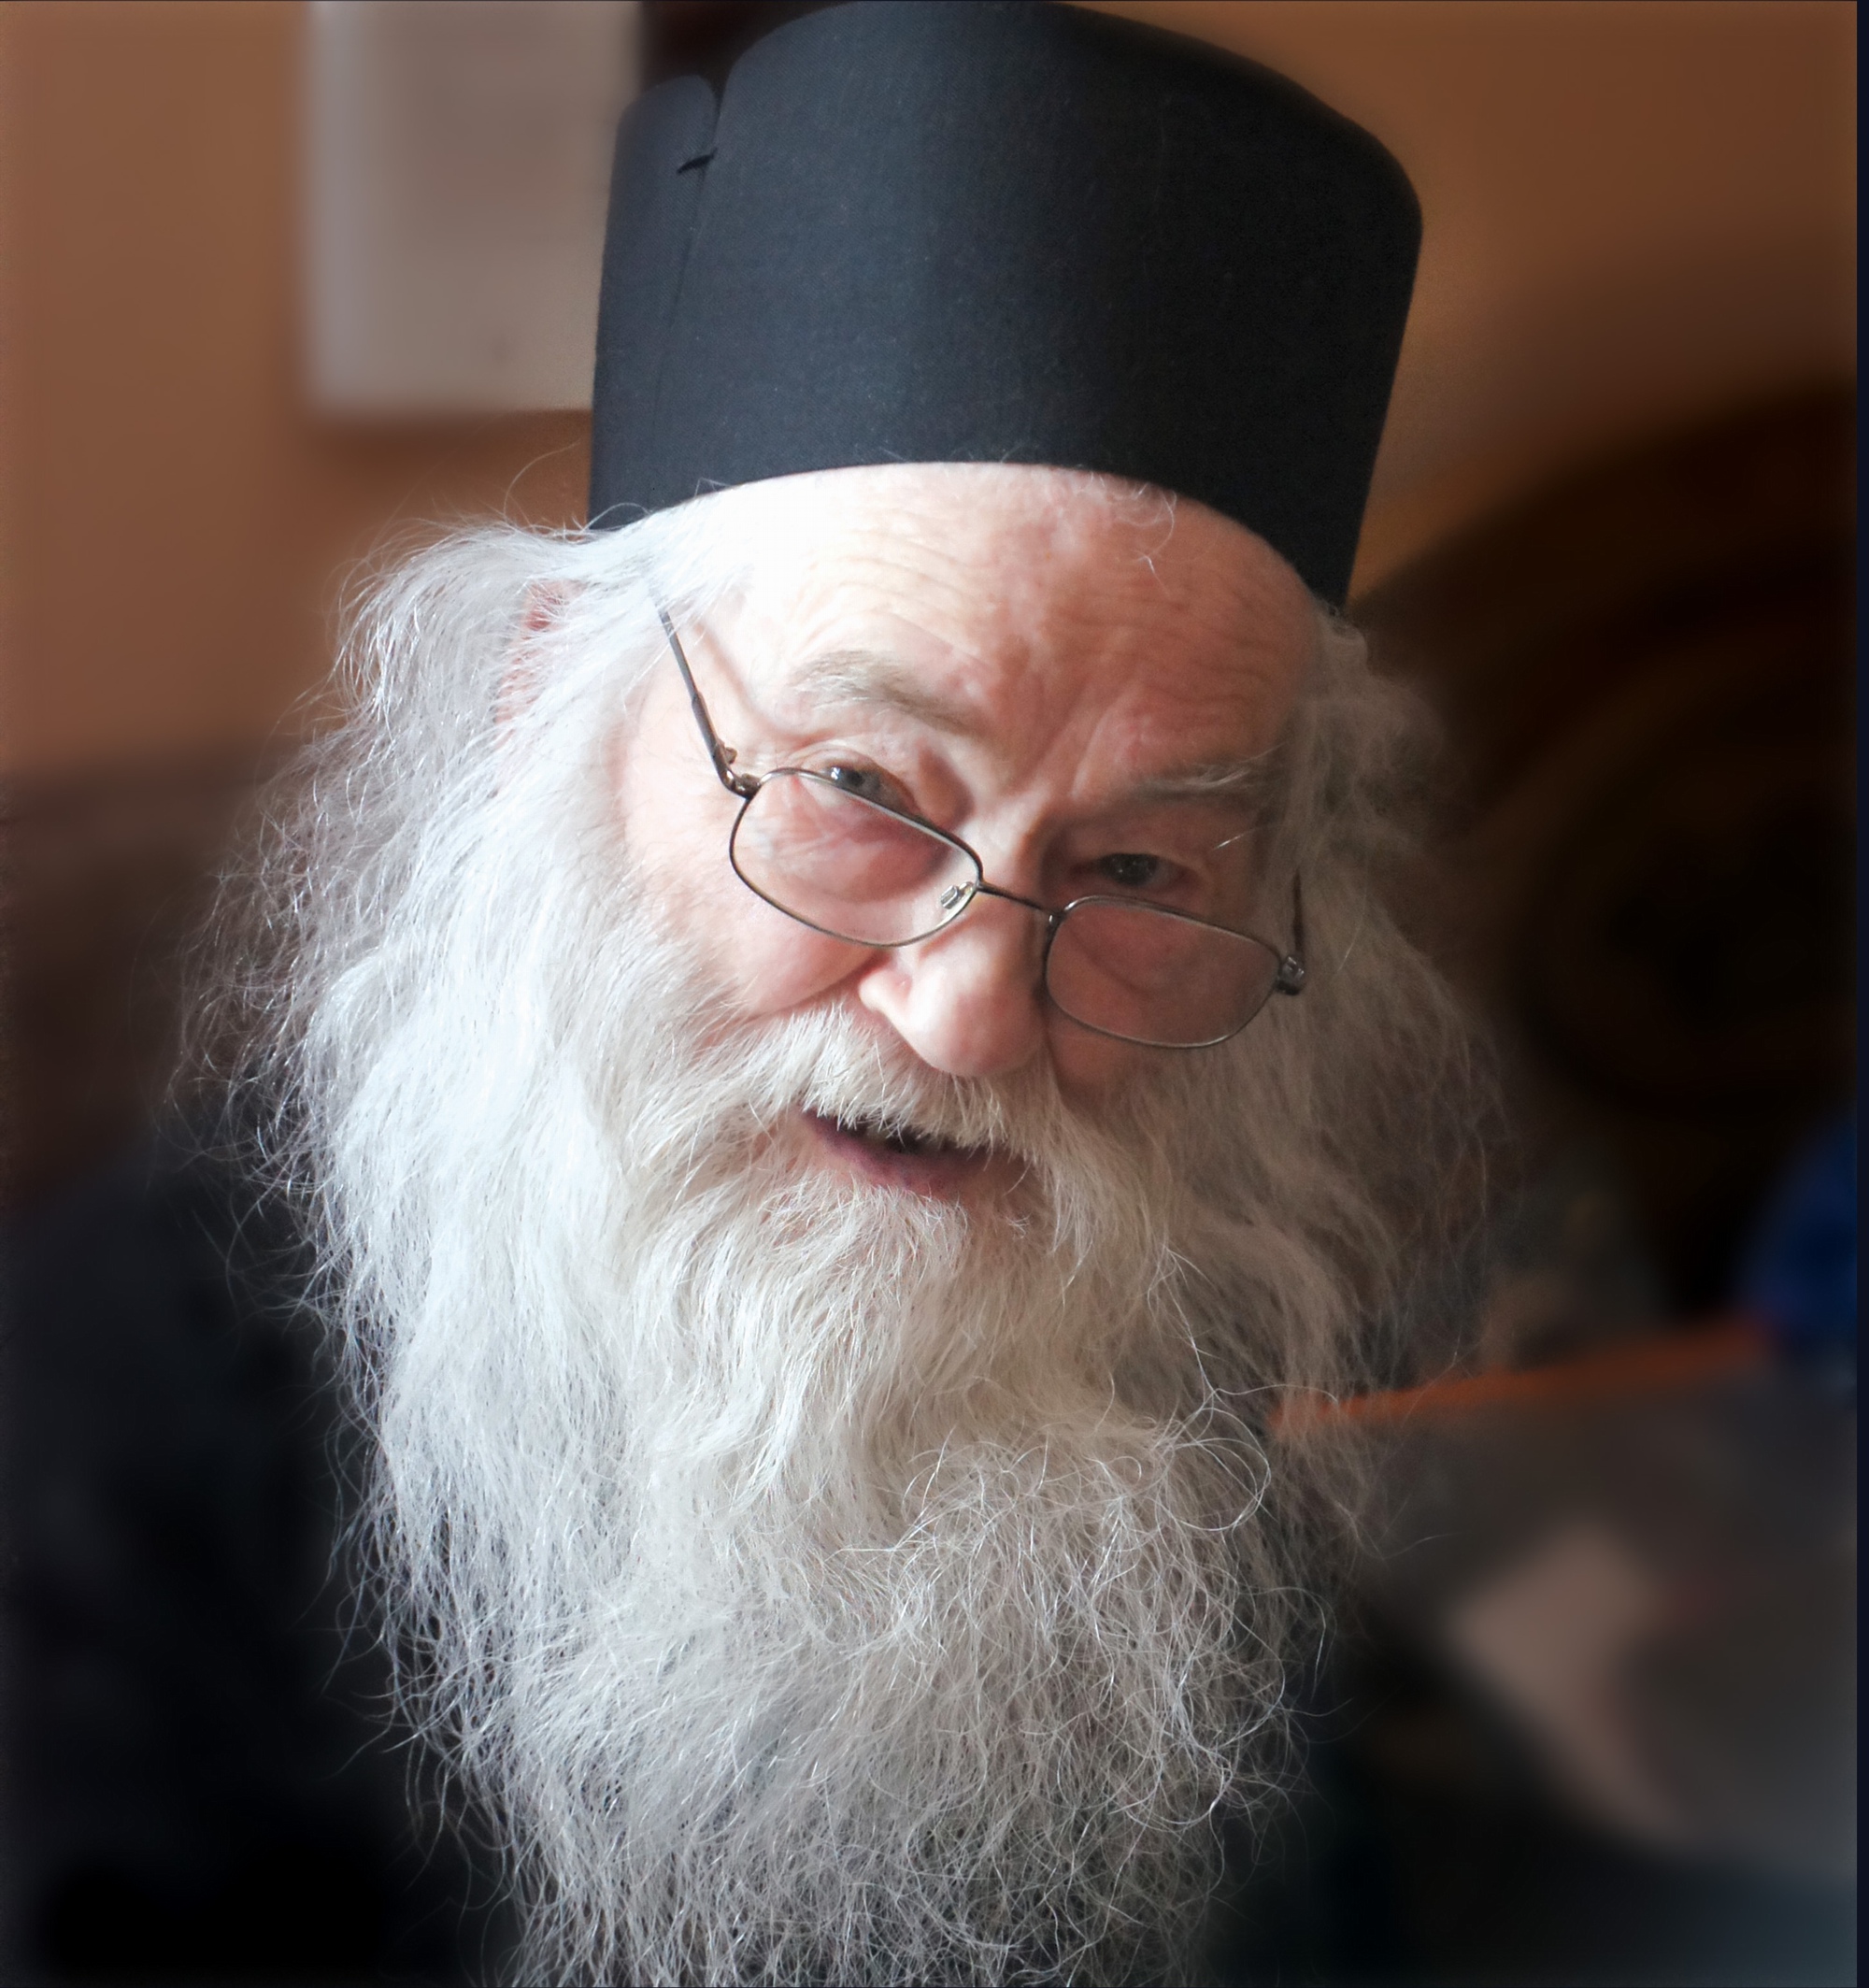 Imagini impresionante: Un nou tablou al părintelui Iustin Pârvu a izvorât mir - Video